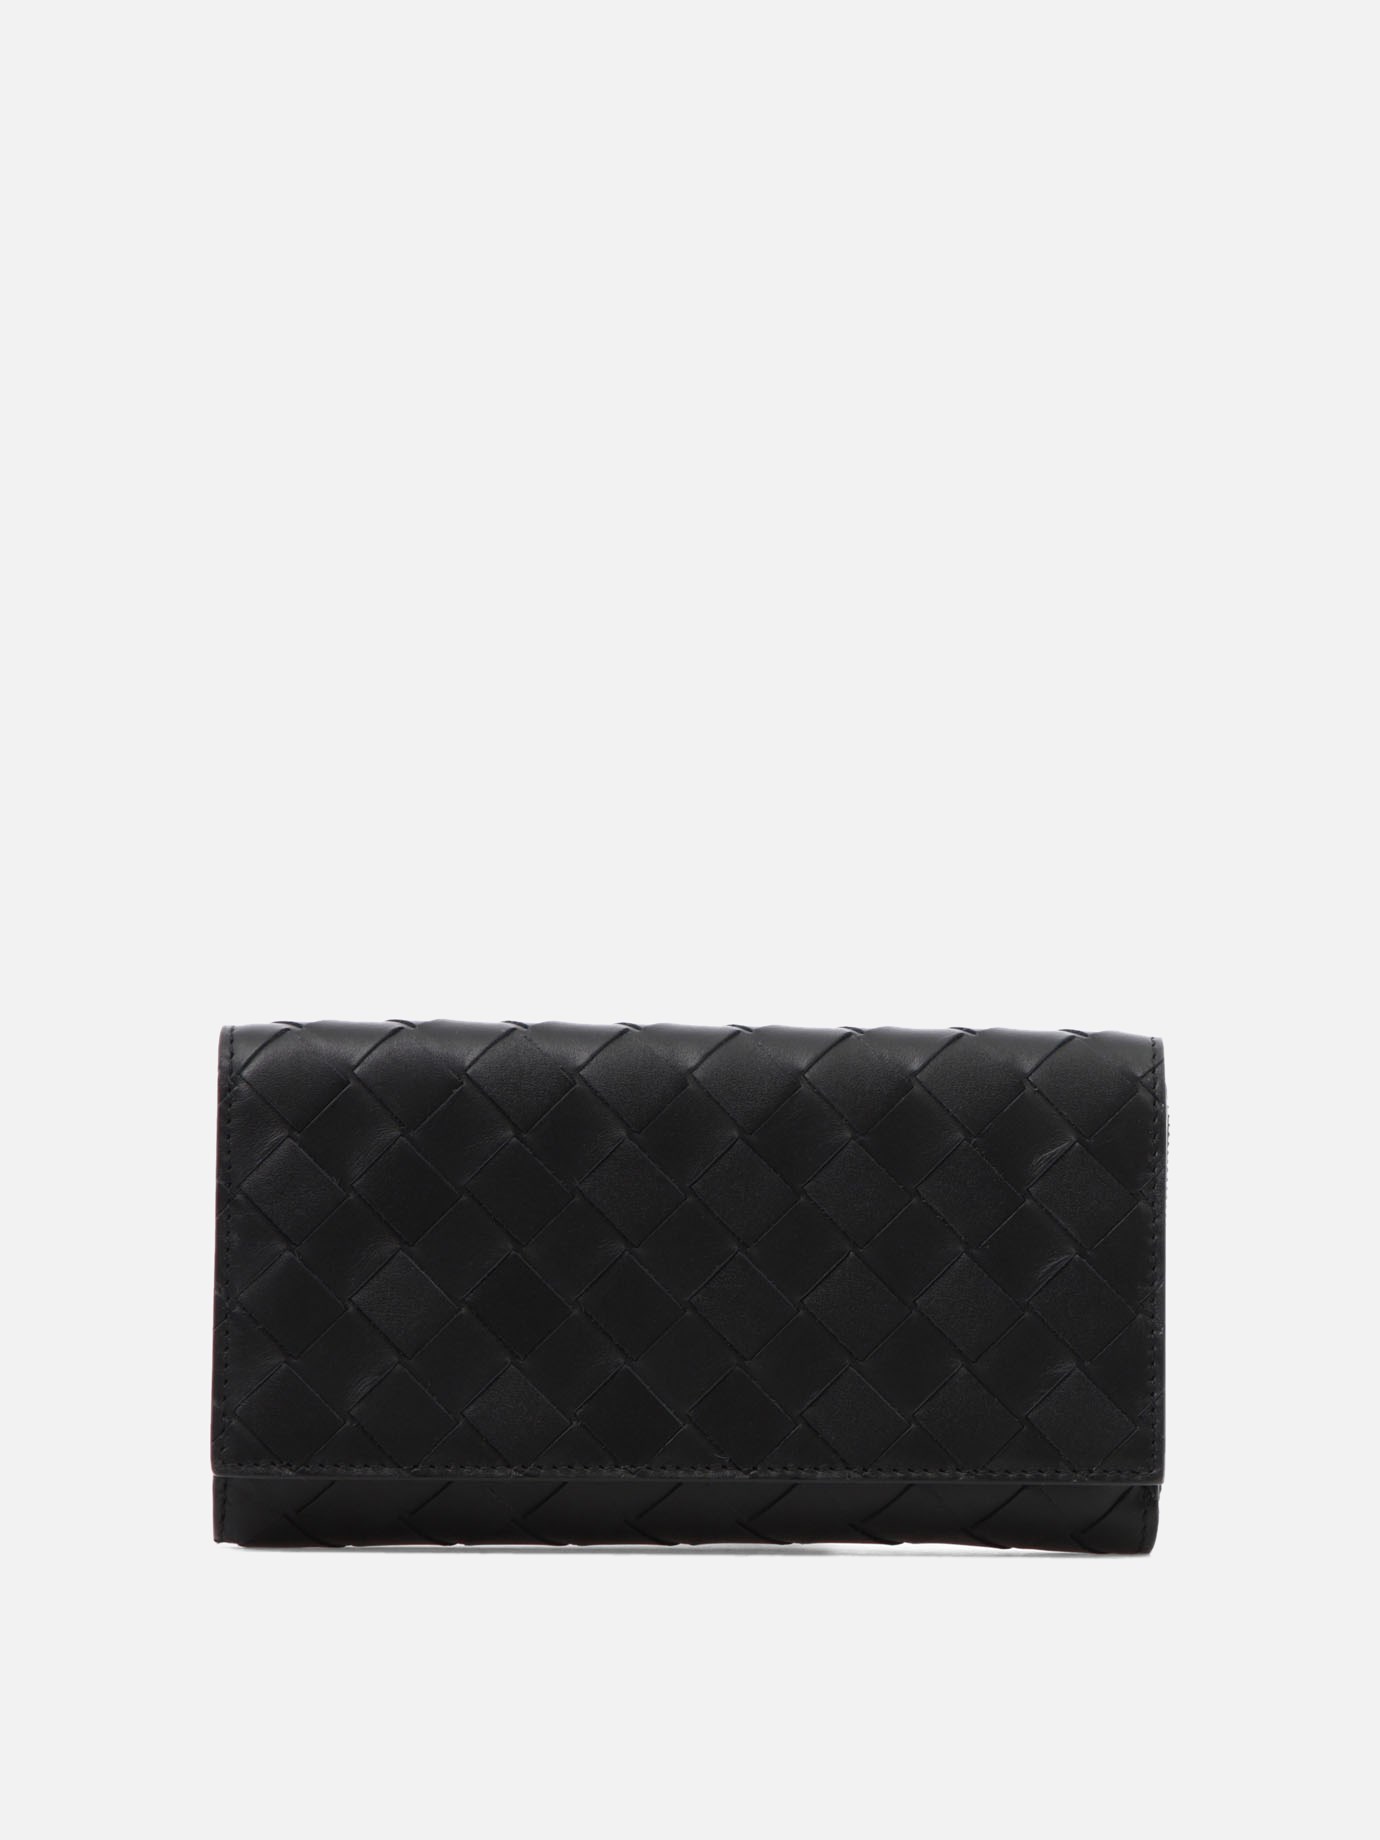 Woven leather walletby Bottega Veneta - 4